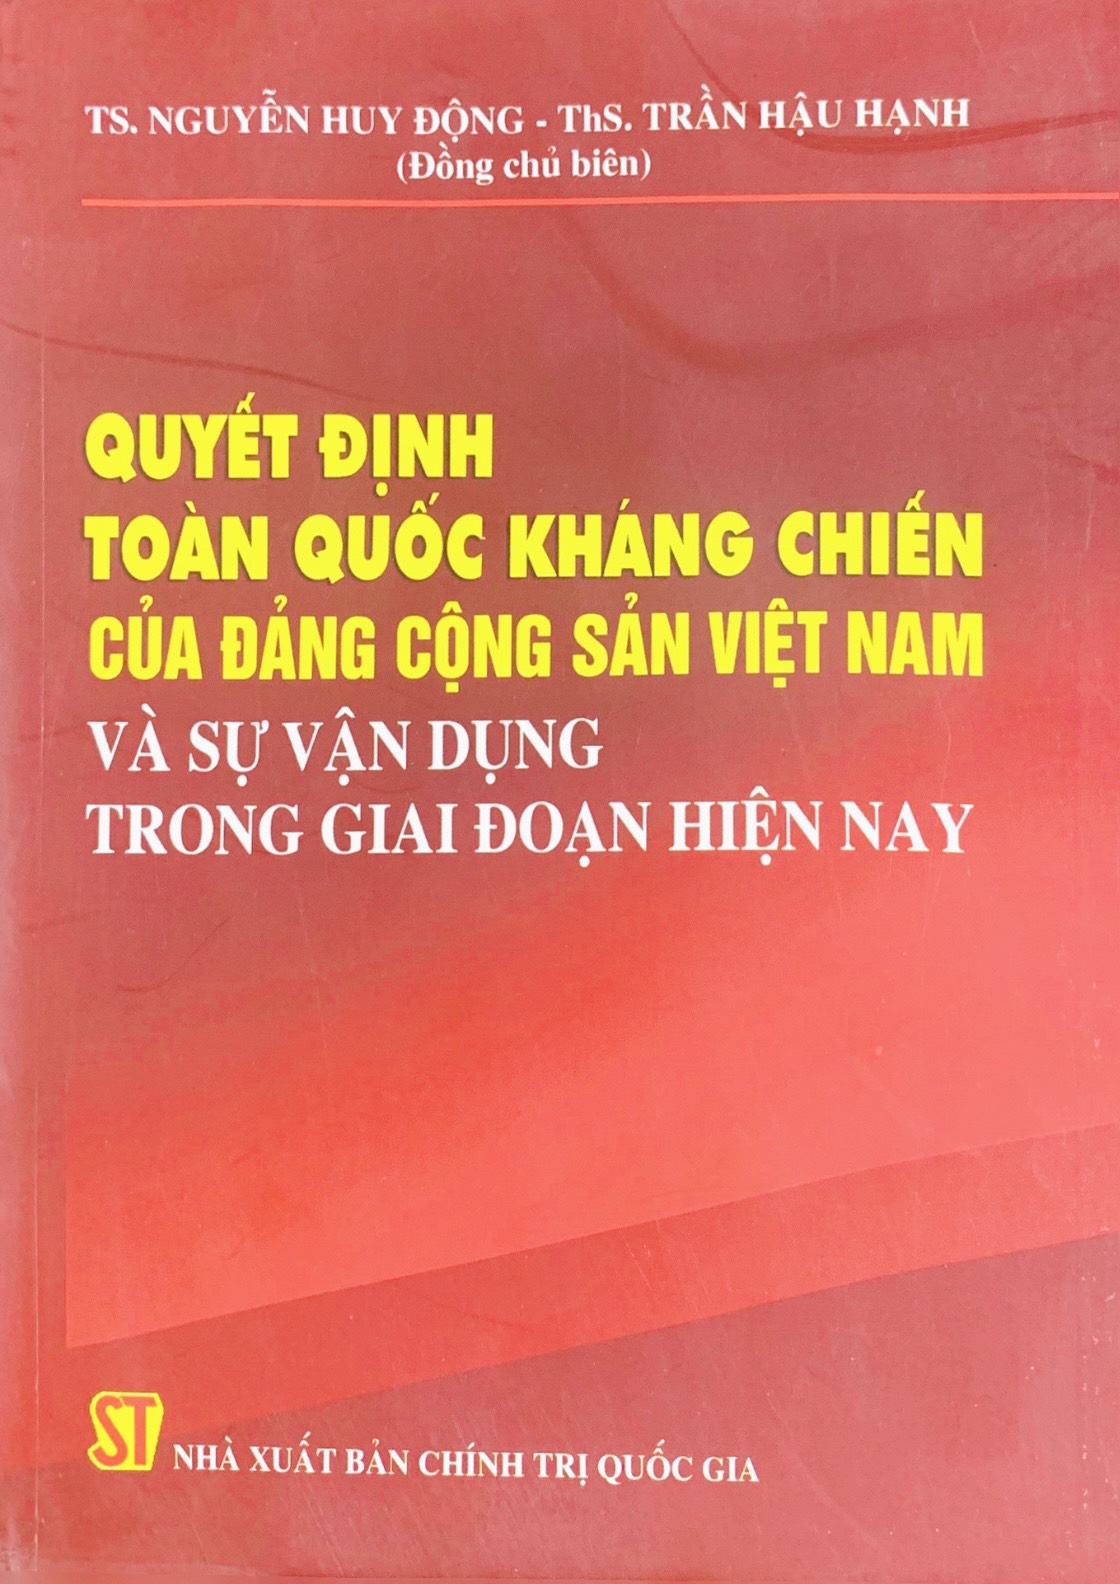 Quyết định toàn quốc kháng chiến của Đảng Cộng sản Việt Nam và sự vận dụng trong giai đoạn hiện nay (xuất bản 2014)